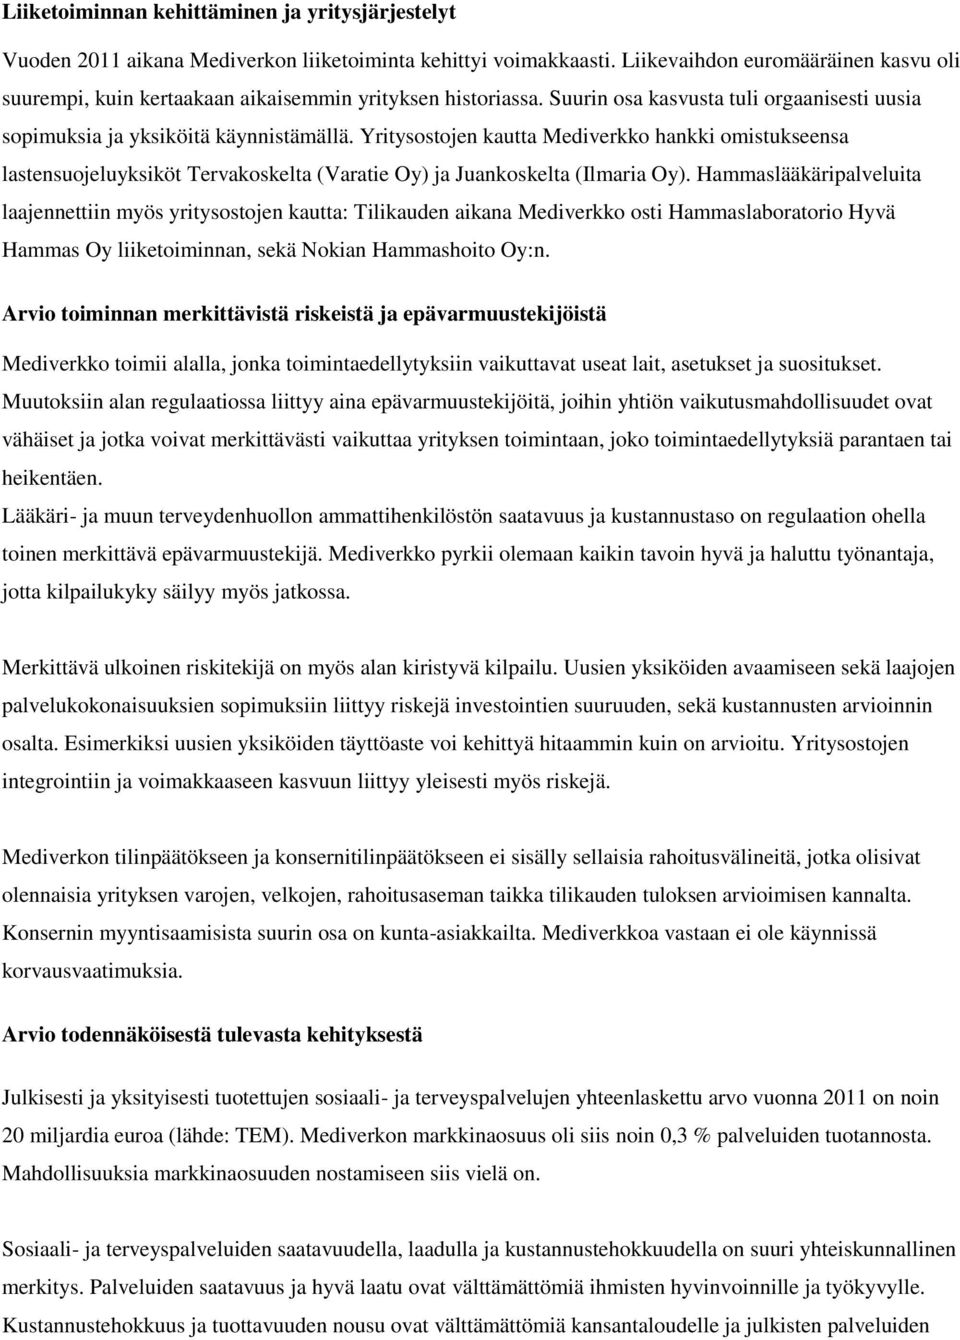 Yritysostojen kautta Mediverkko hankki omistukseensa lastensuojeluyksiköt Tervakoskelta (Varatie Oy) ja Juankoskelta (Ilmaria Oy).